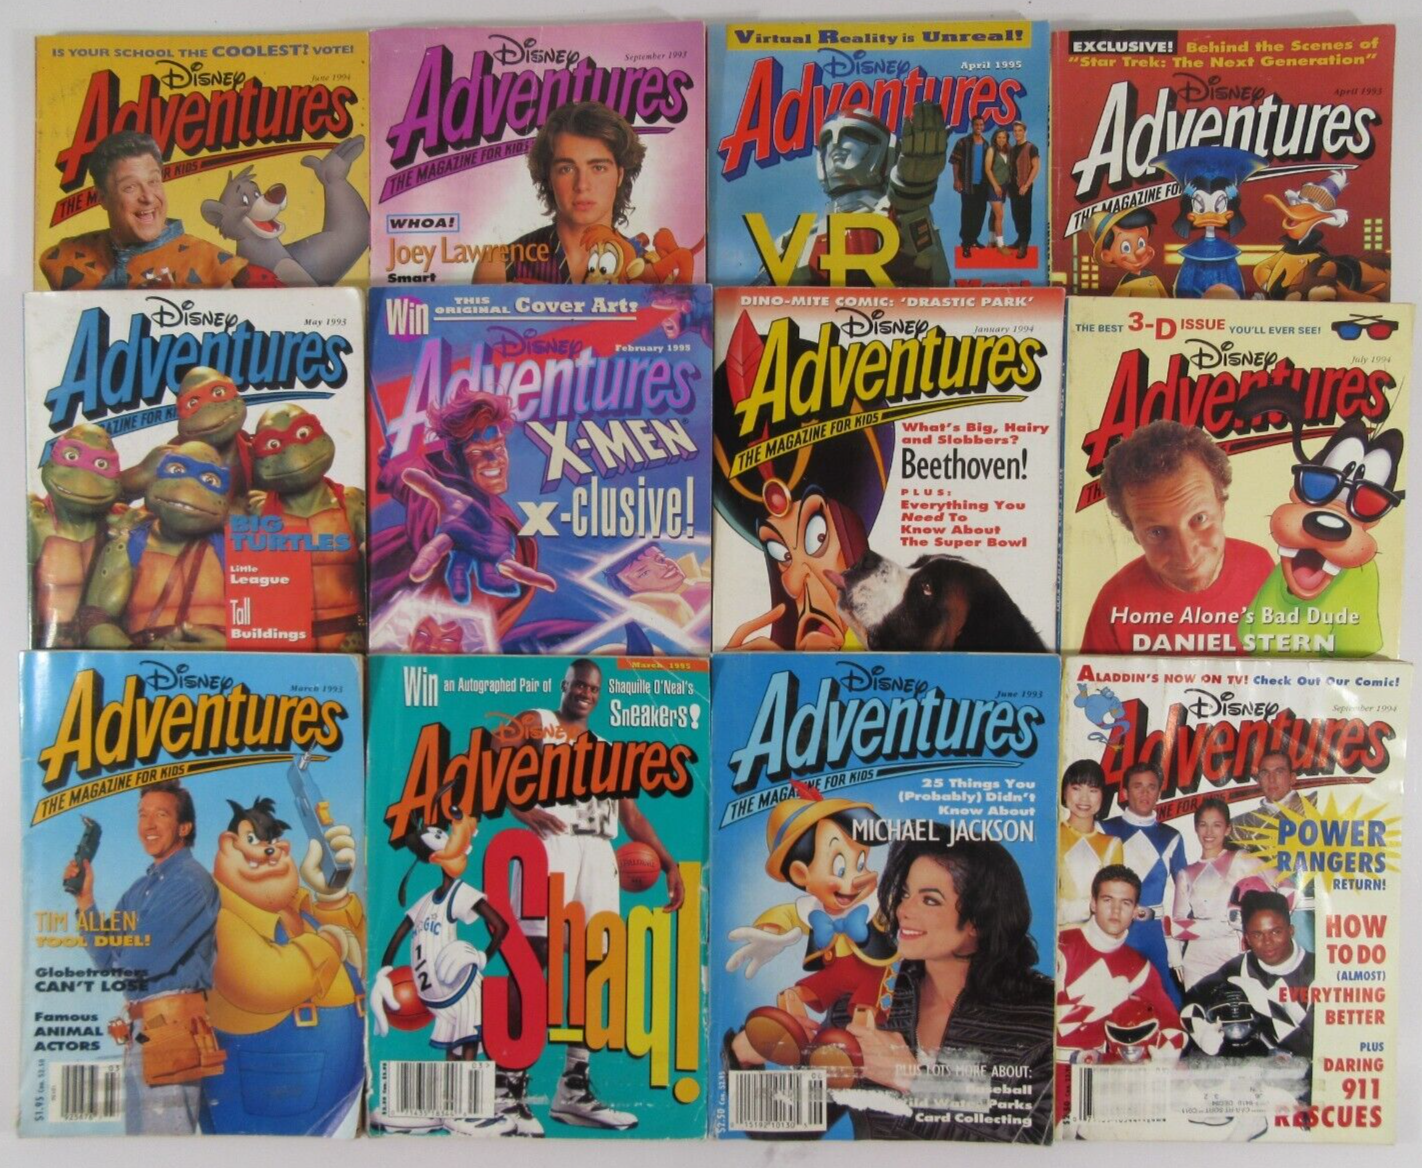 Disney Adventures magazine